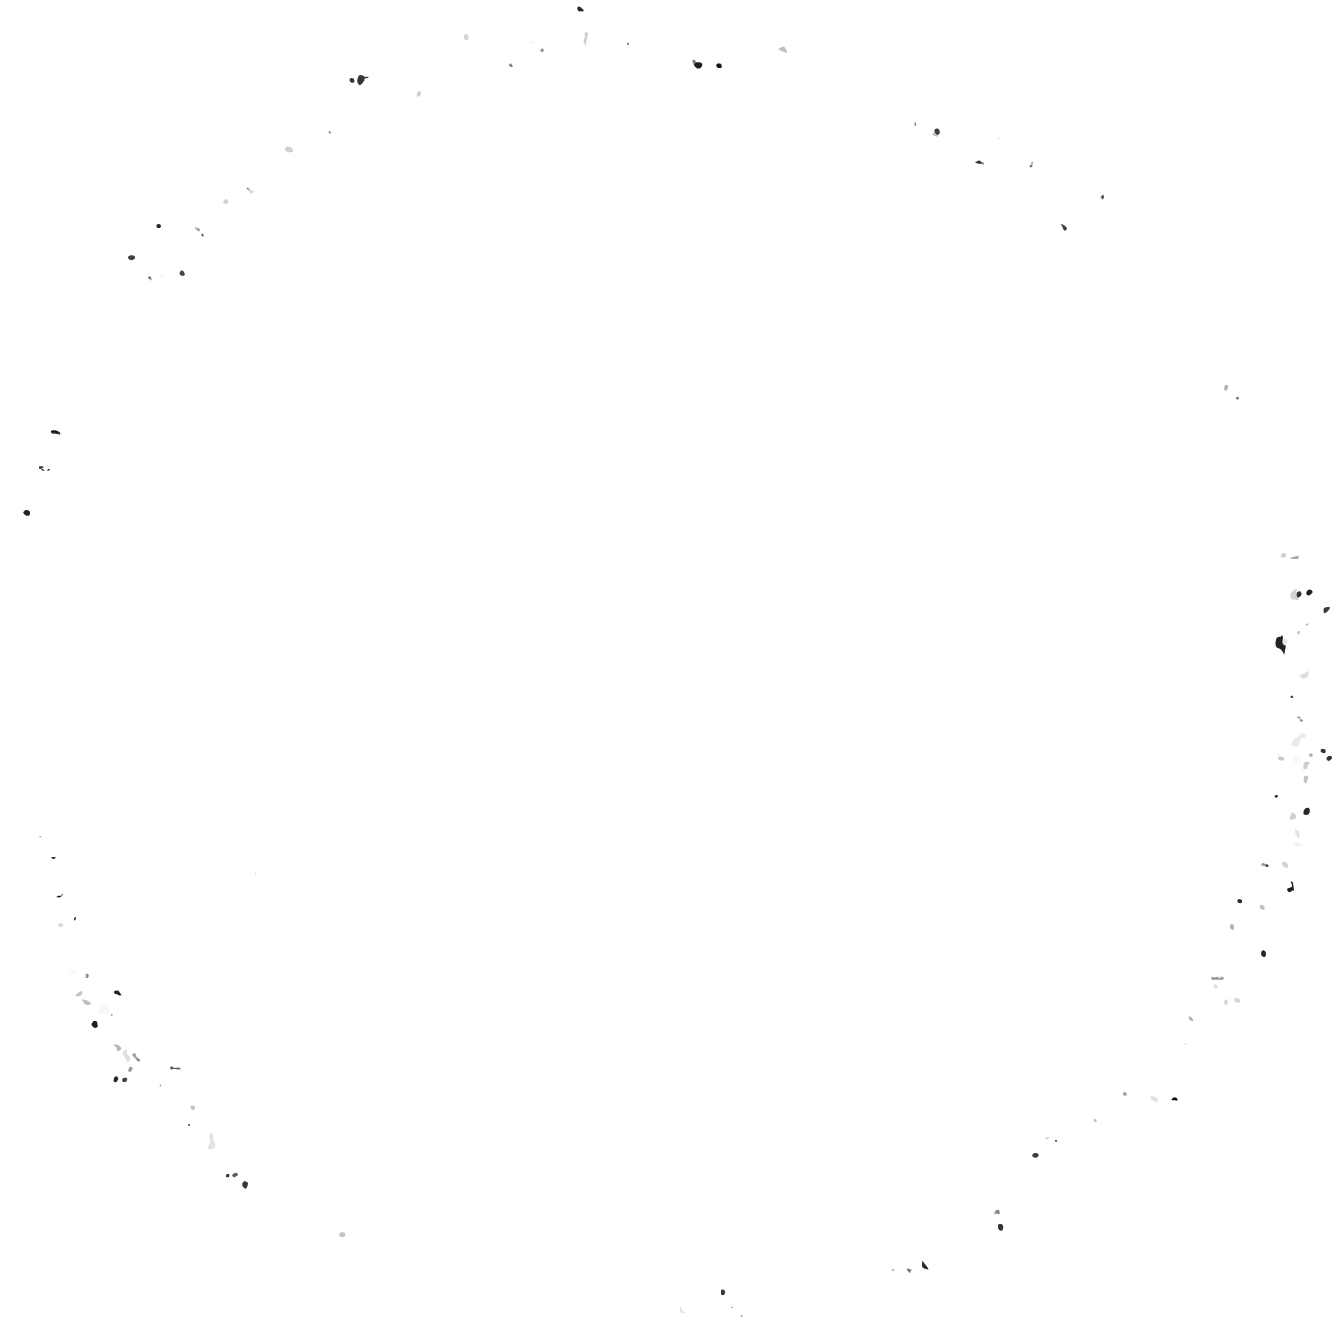 Fritz & Friends